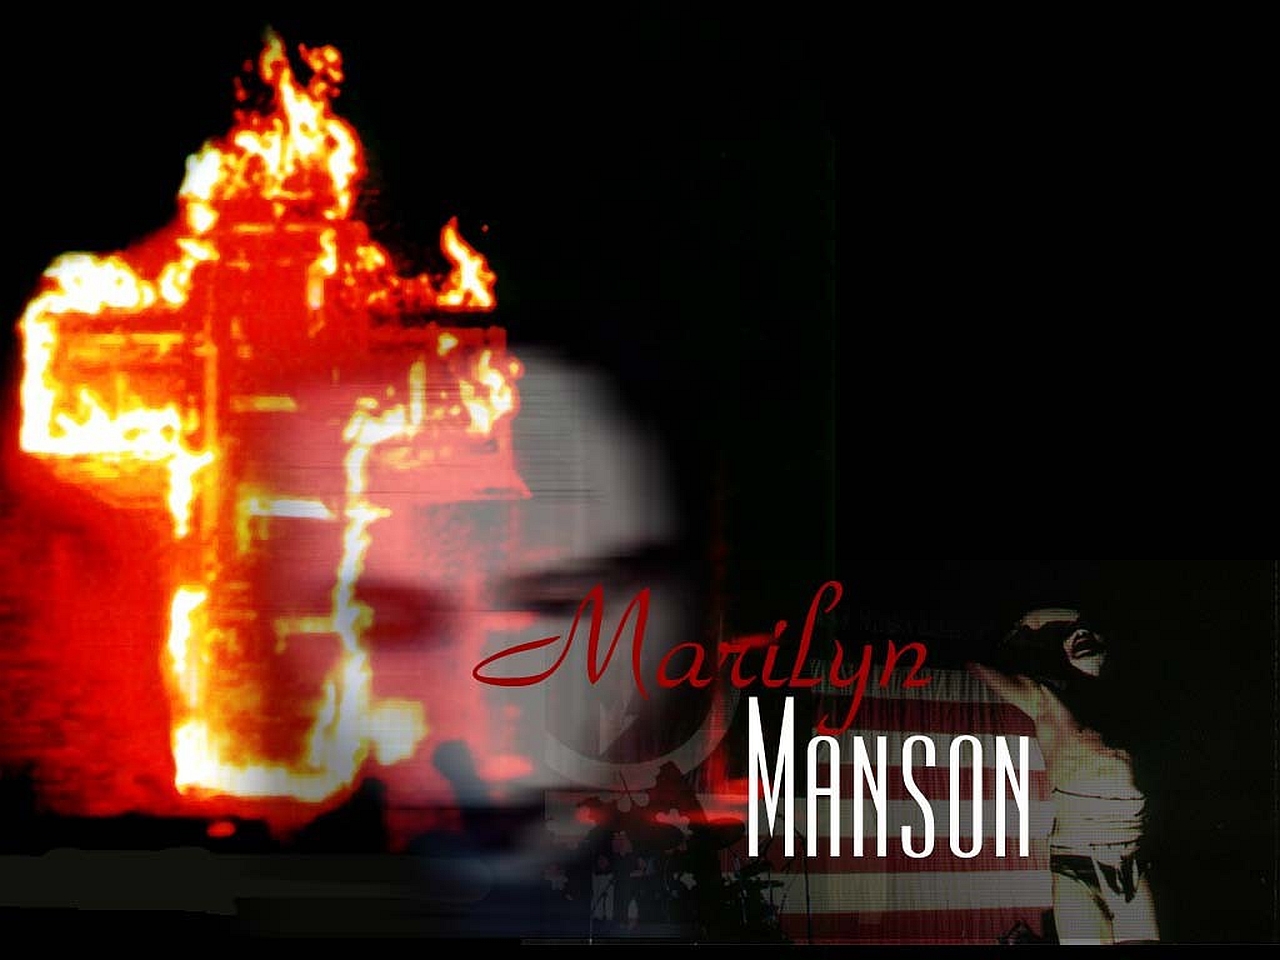 Heavy Metal Industrial Metal Marilyn Manson 1280x960